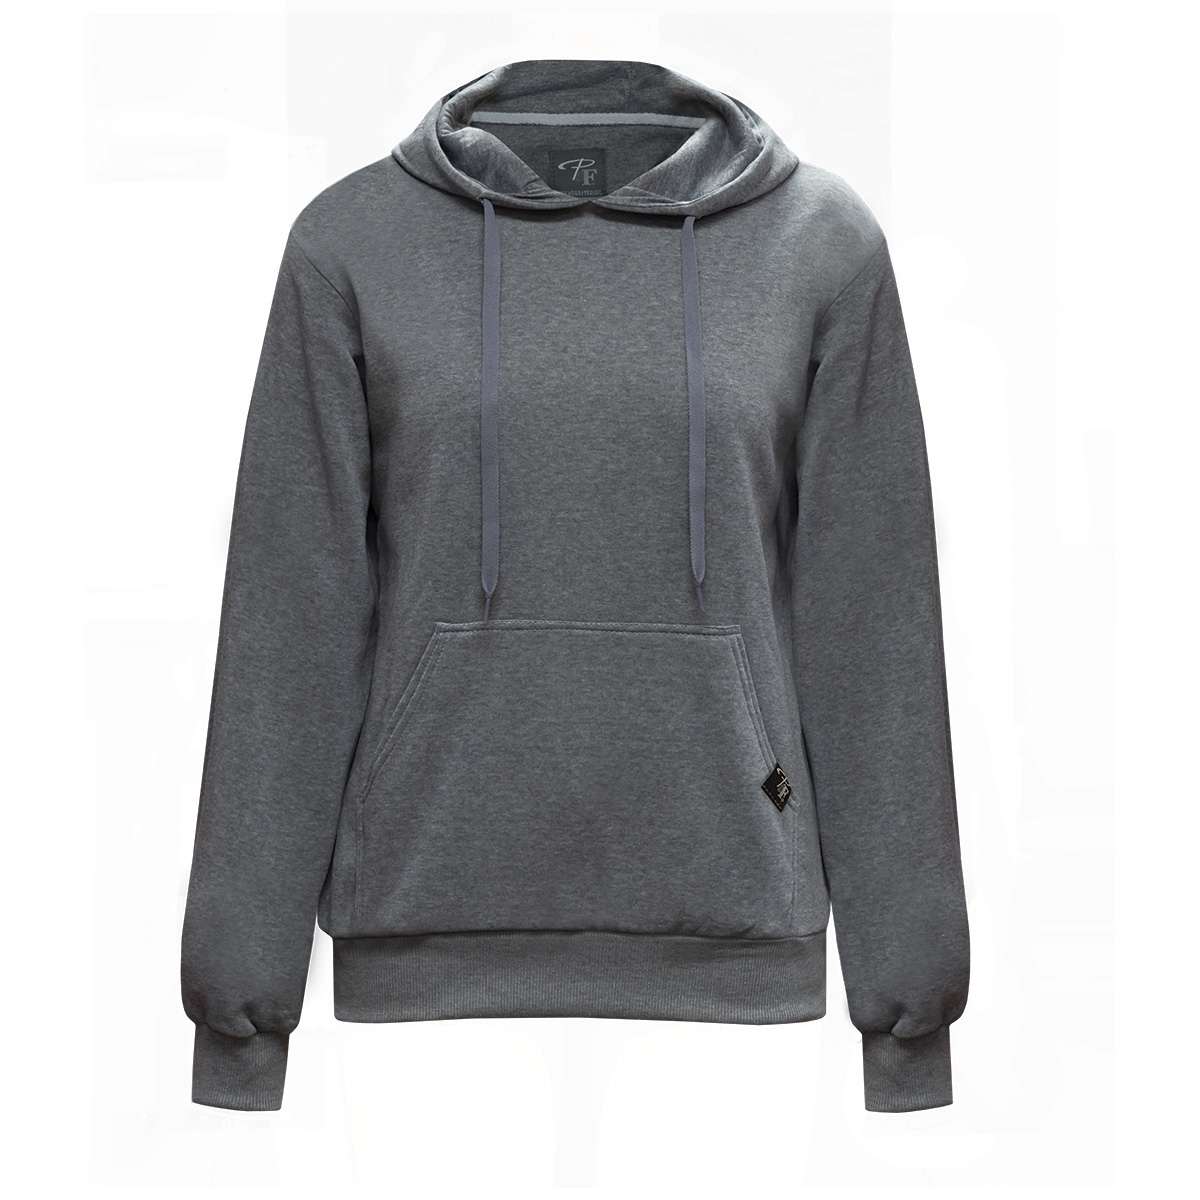 chandail-coton-ouaté-a-capuchon-couleur-gris-hoodie-sweatshirt-grey-color-PF466-19-vue-face-front-view